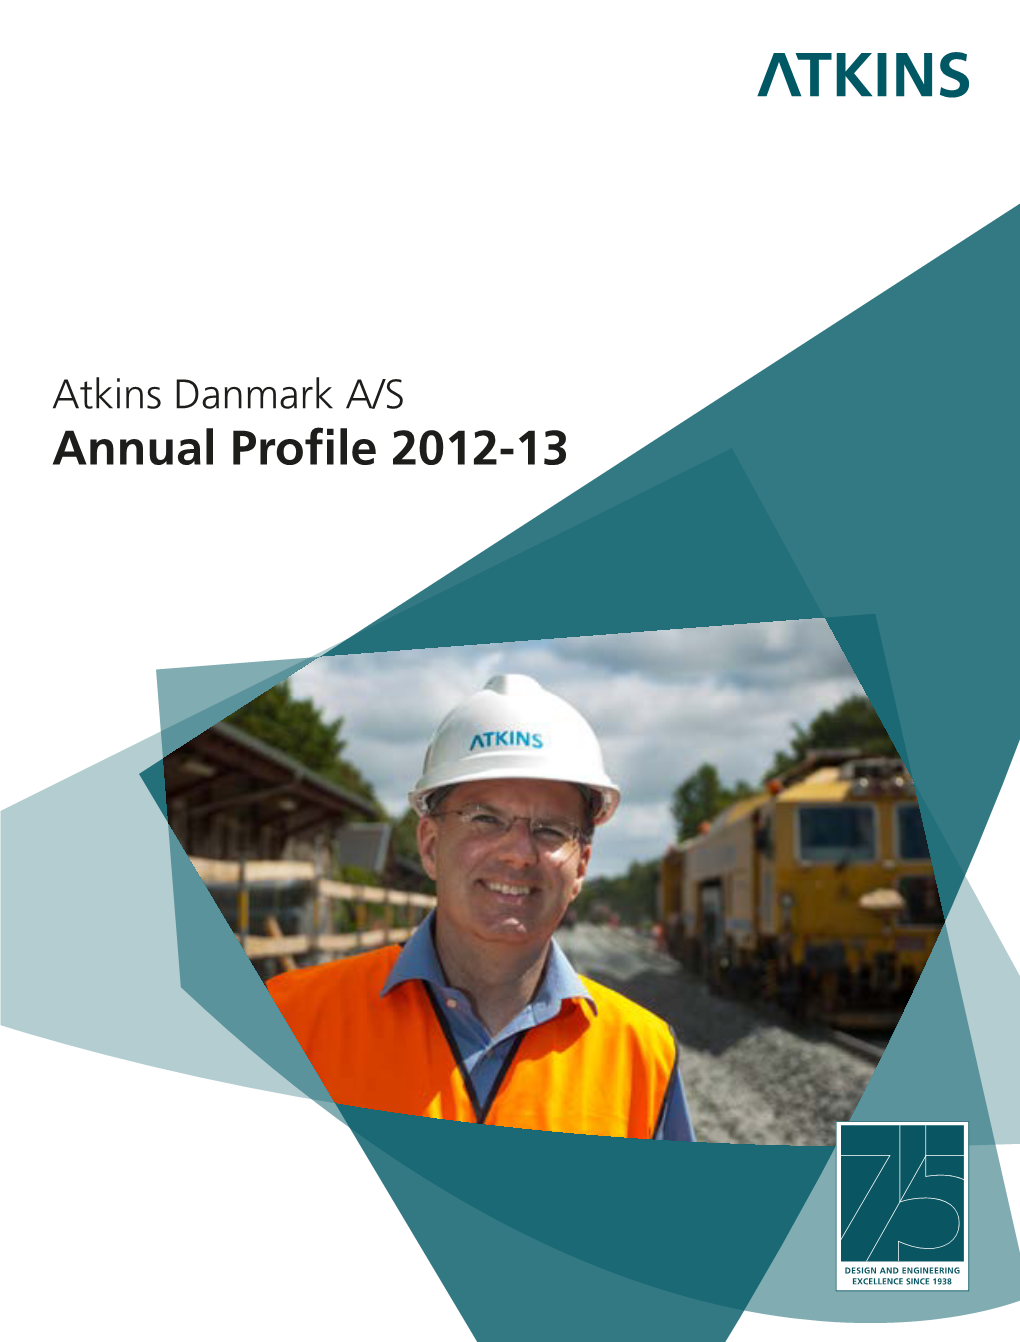 Annual Profile 2012-13 Atkins Danmark A/S – Annual Profile